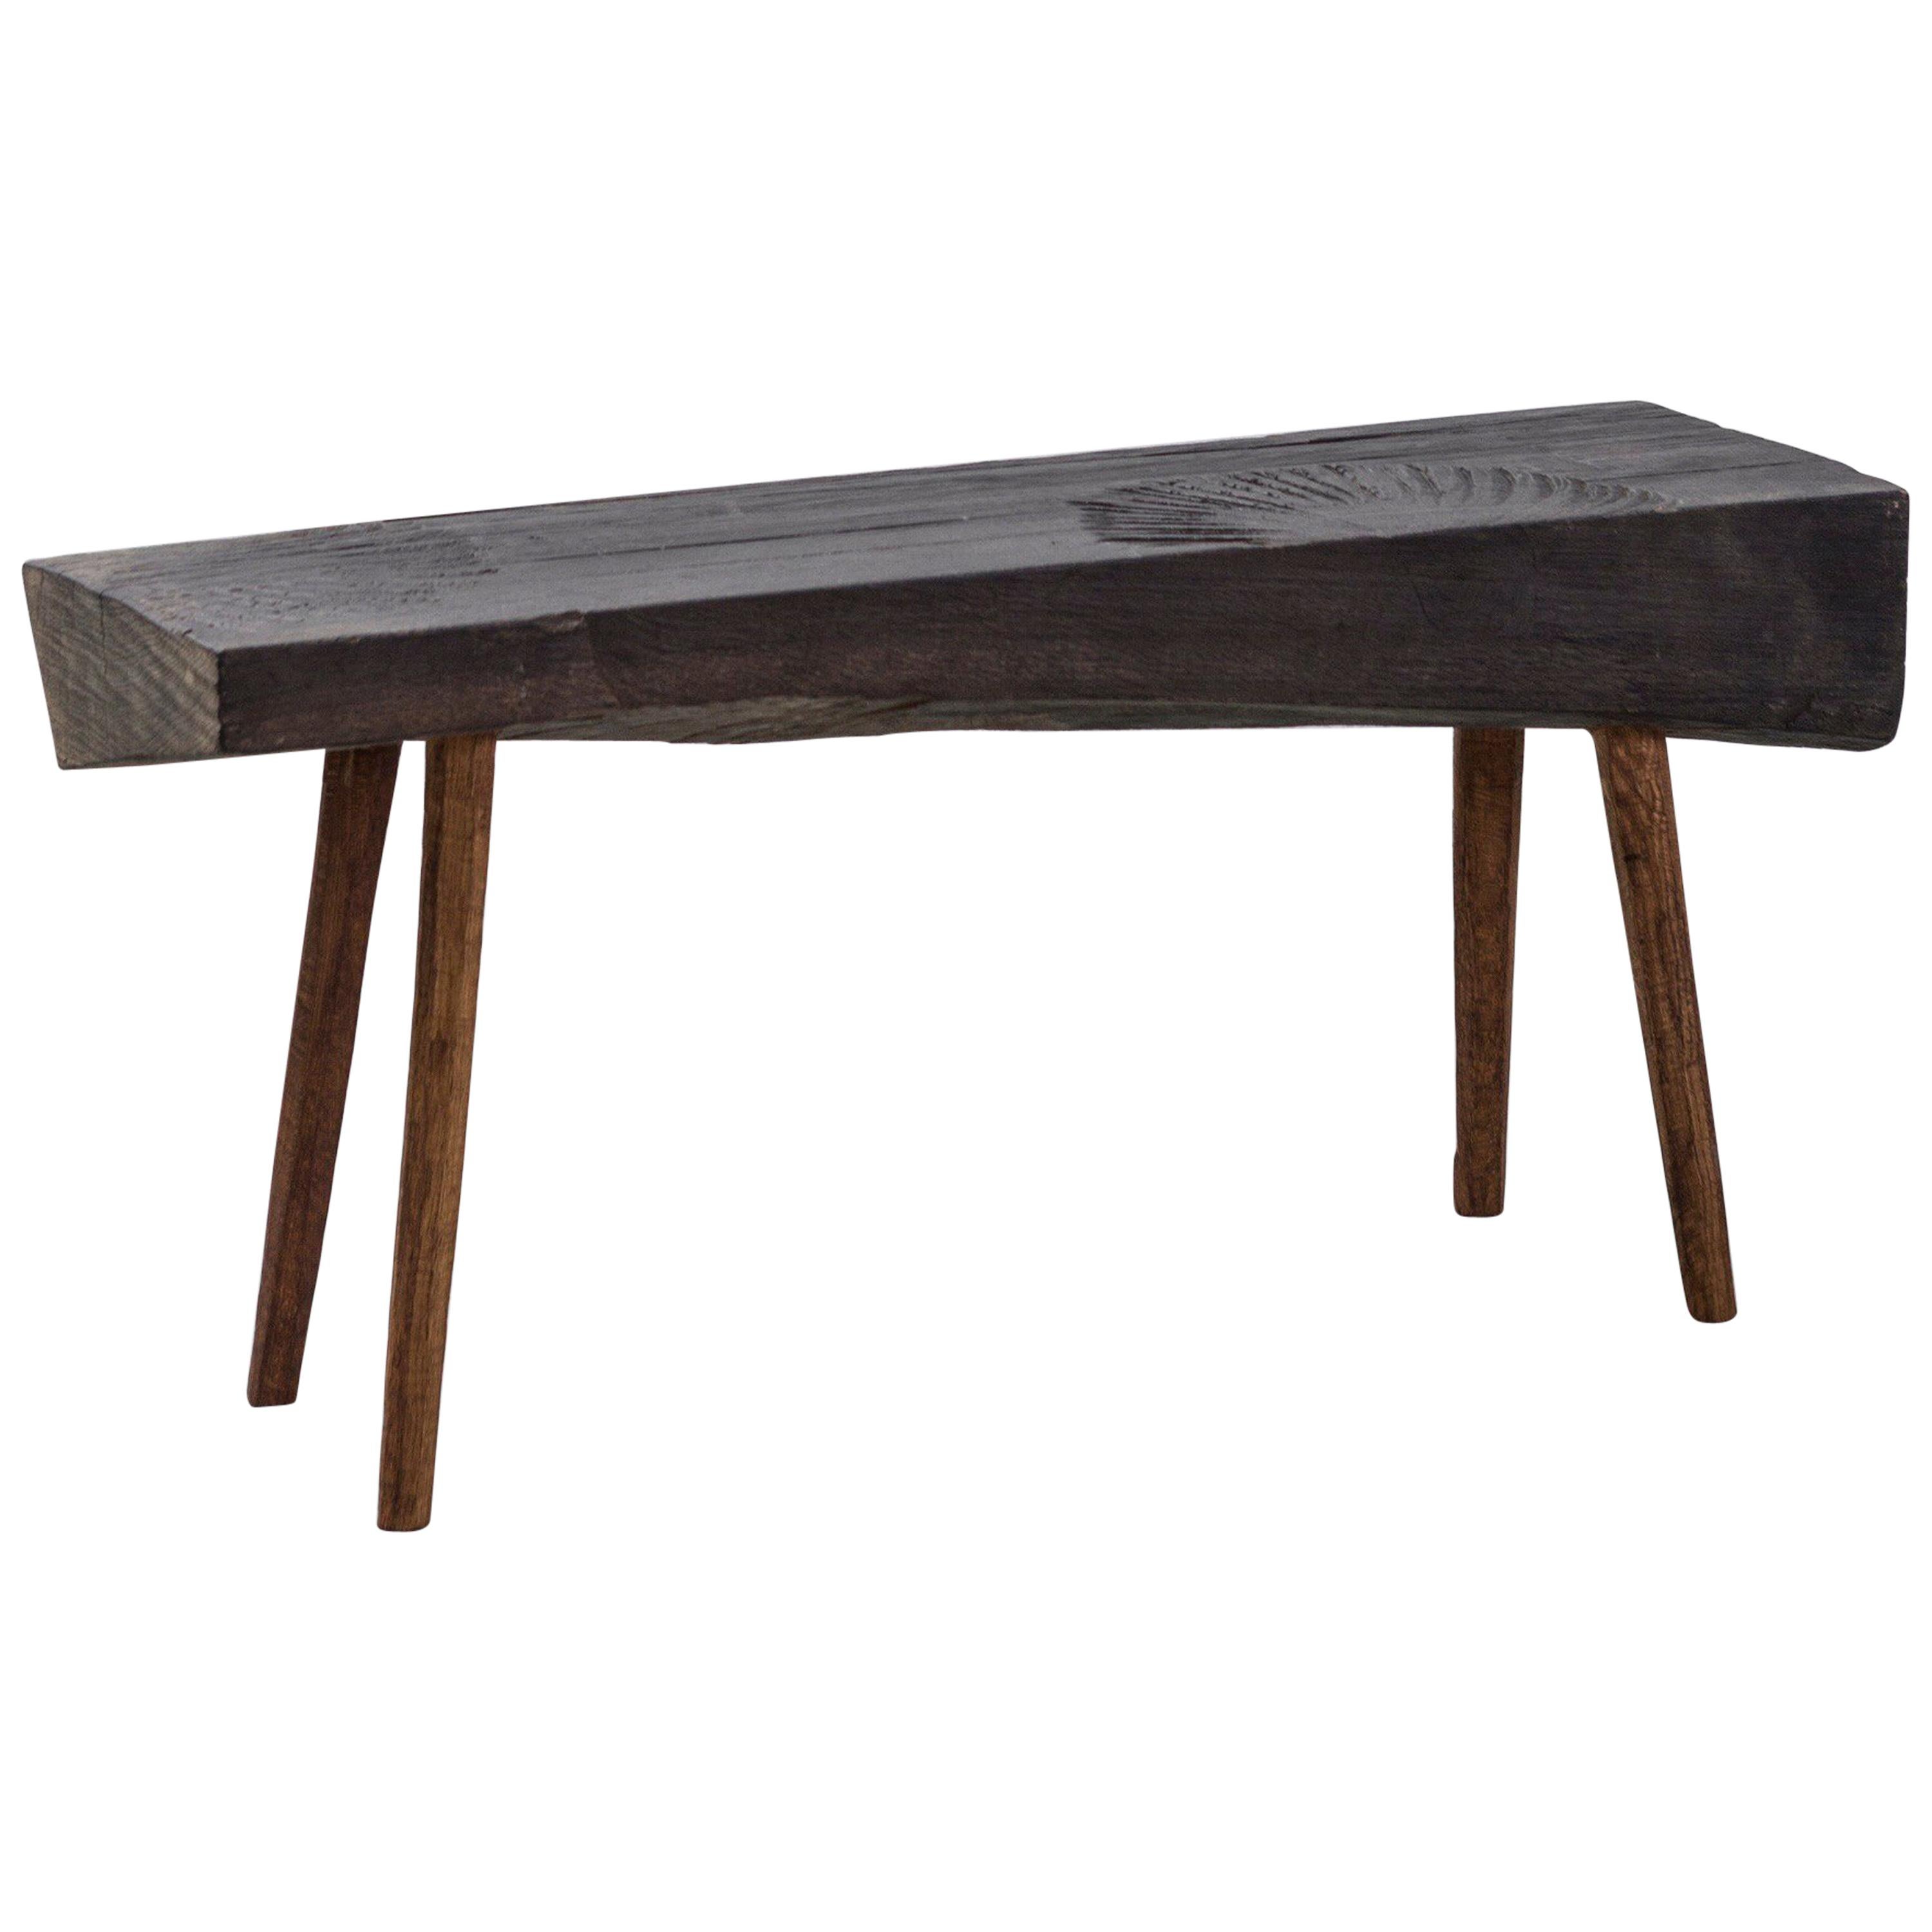 Petite table n°4 contemporaine de style brutaliste en chêne massif et huile de lin